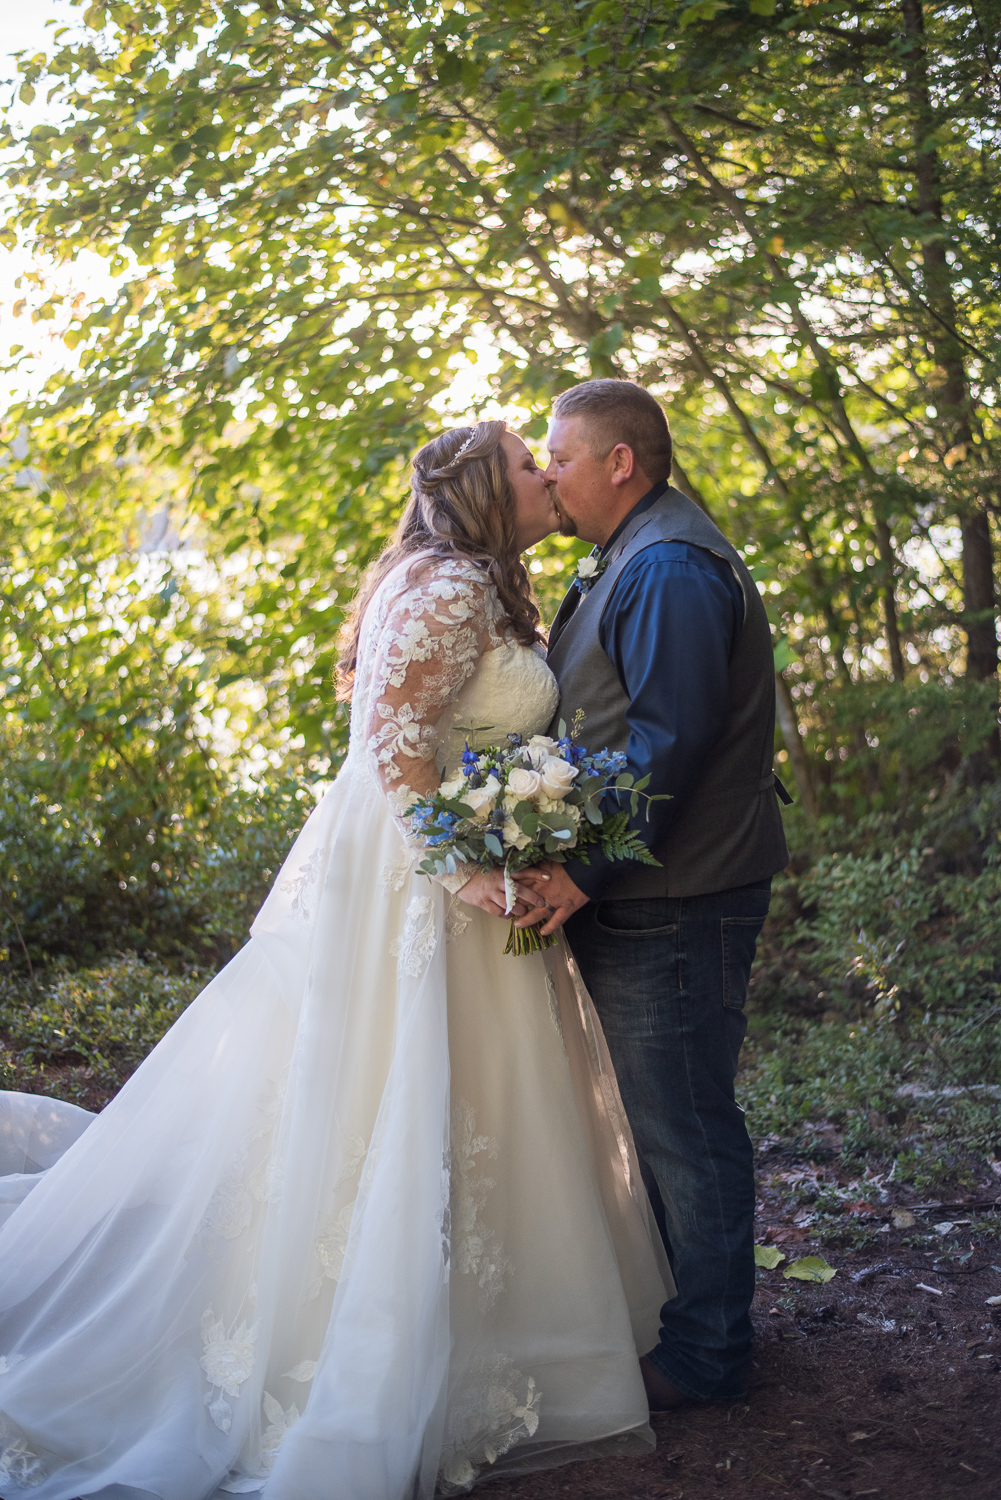 bride and groom kissing at wedding at the lake